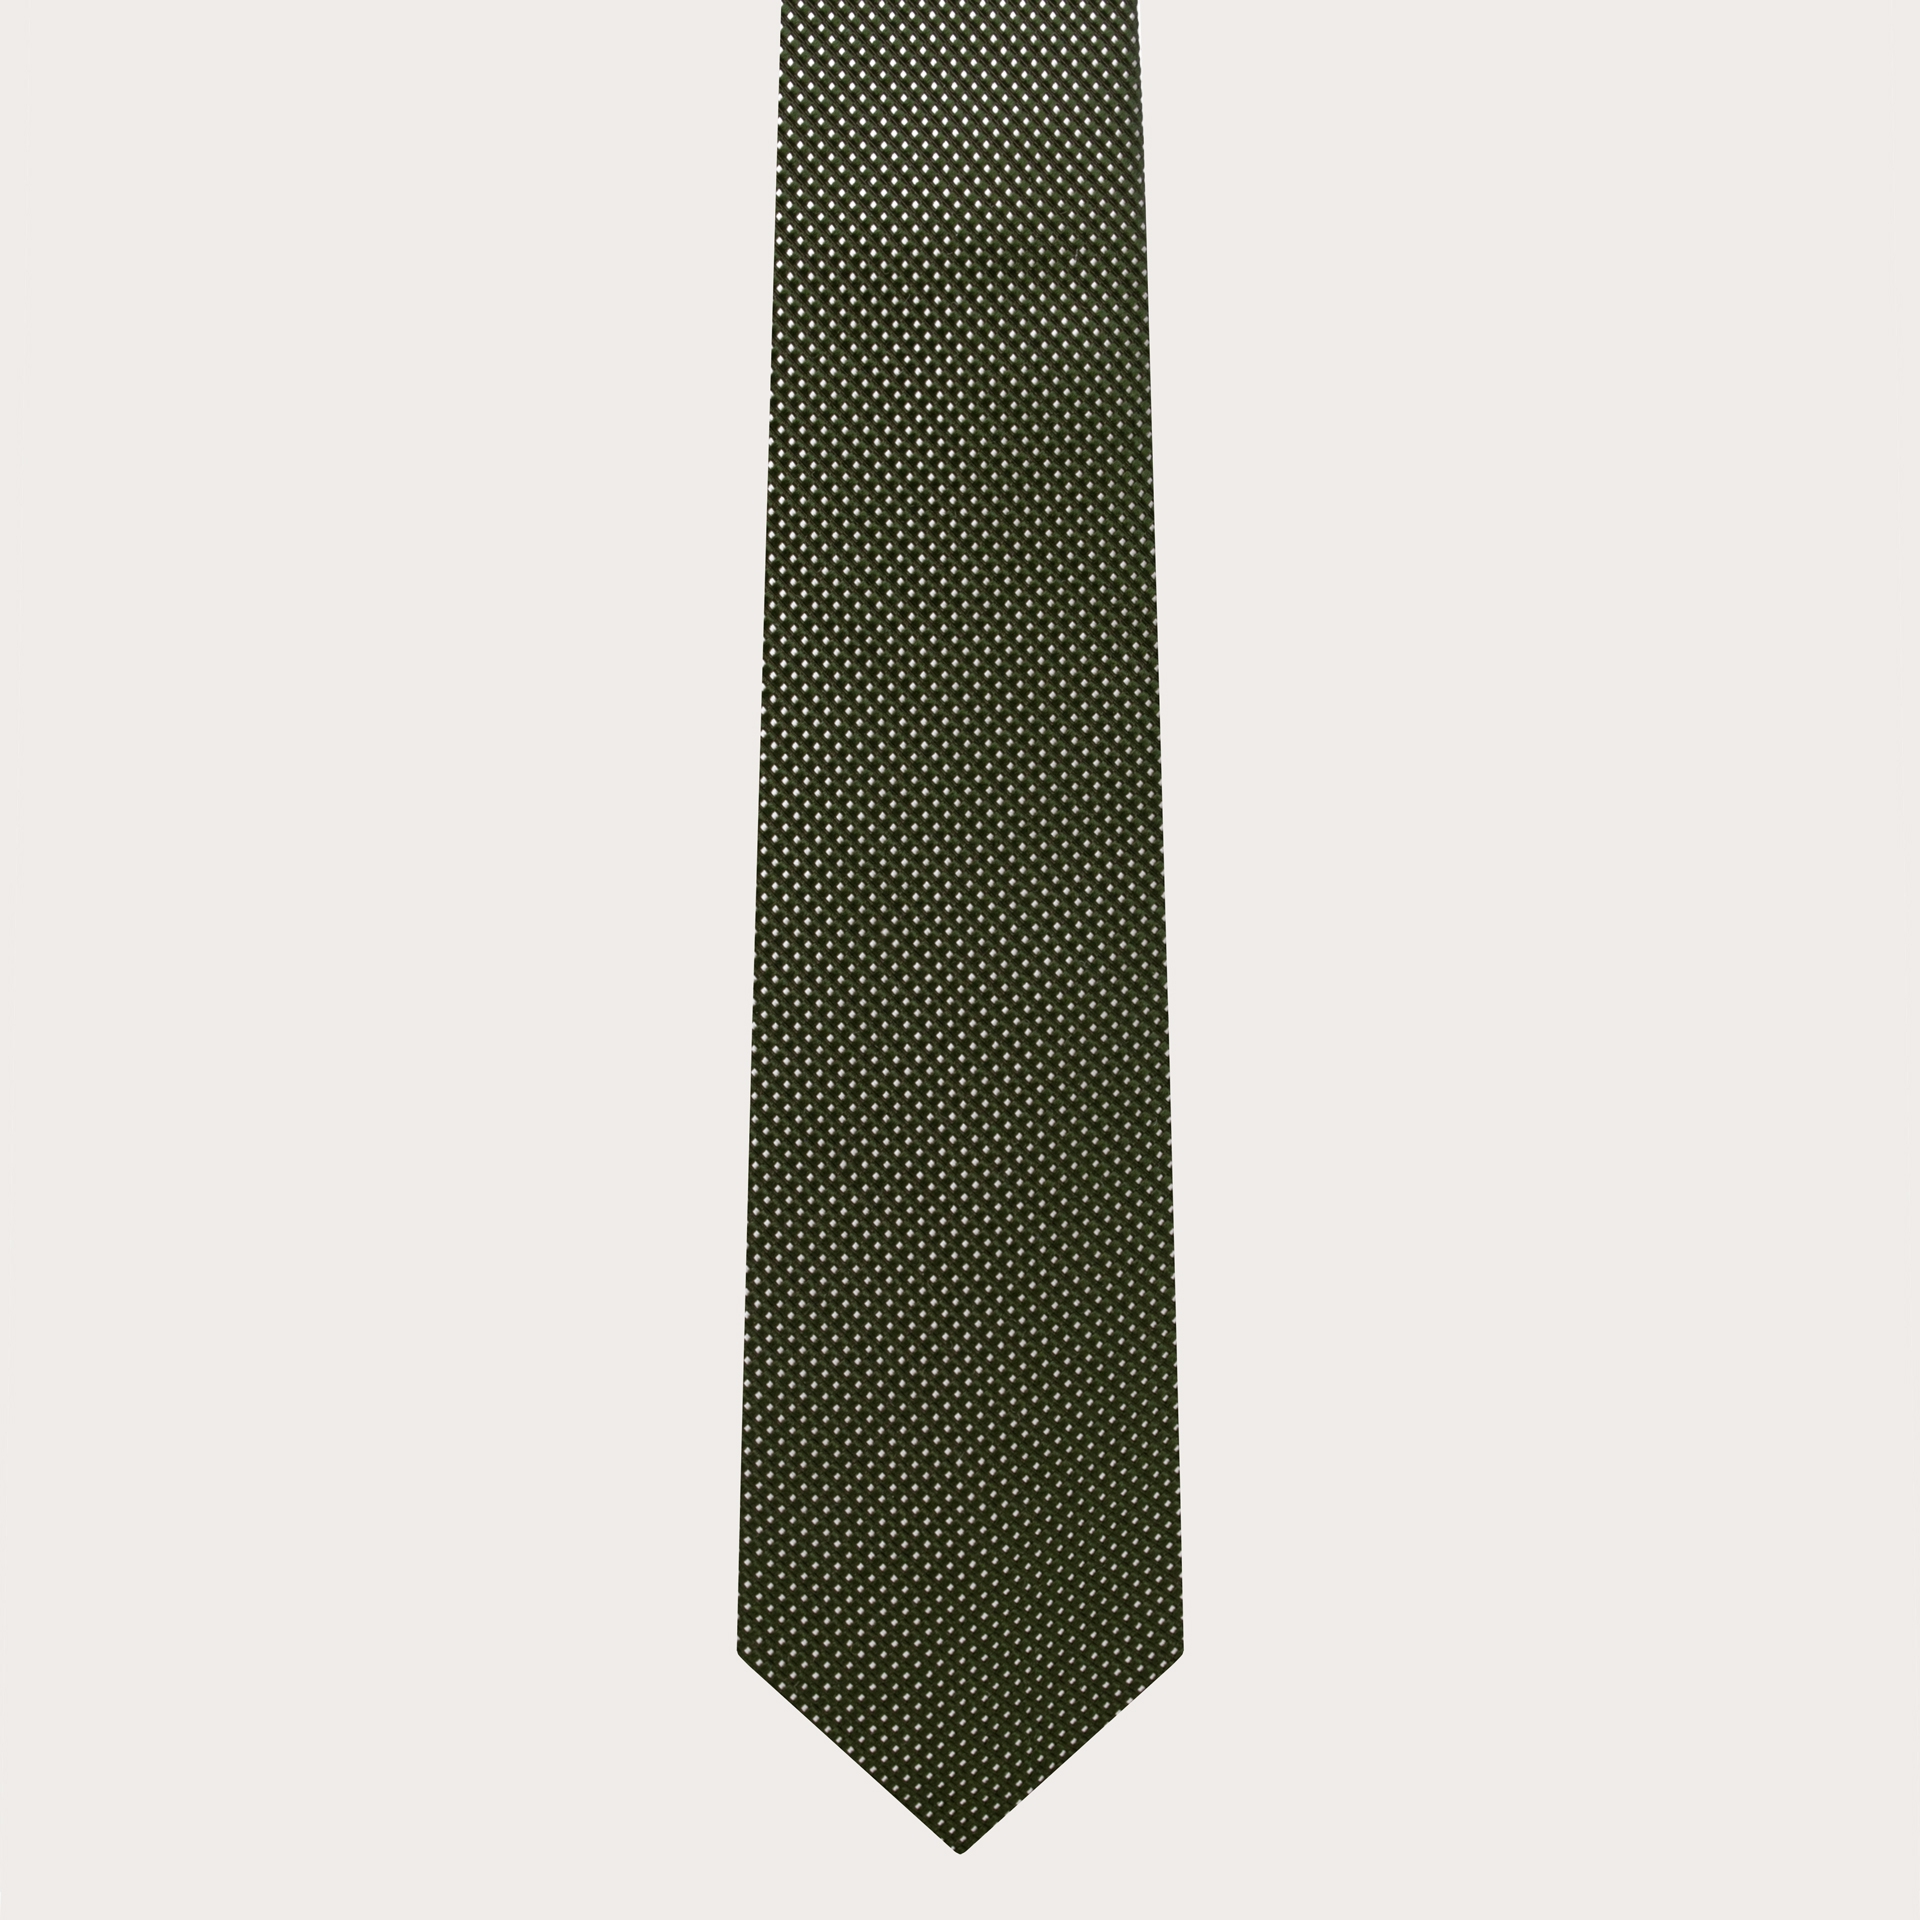 BRUCLE Cravate élégante en soie verte à pois